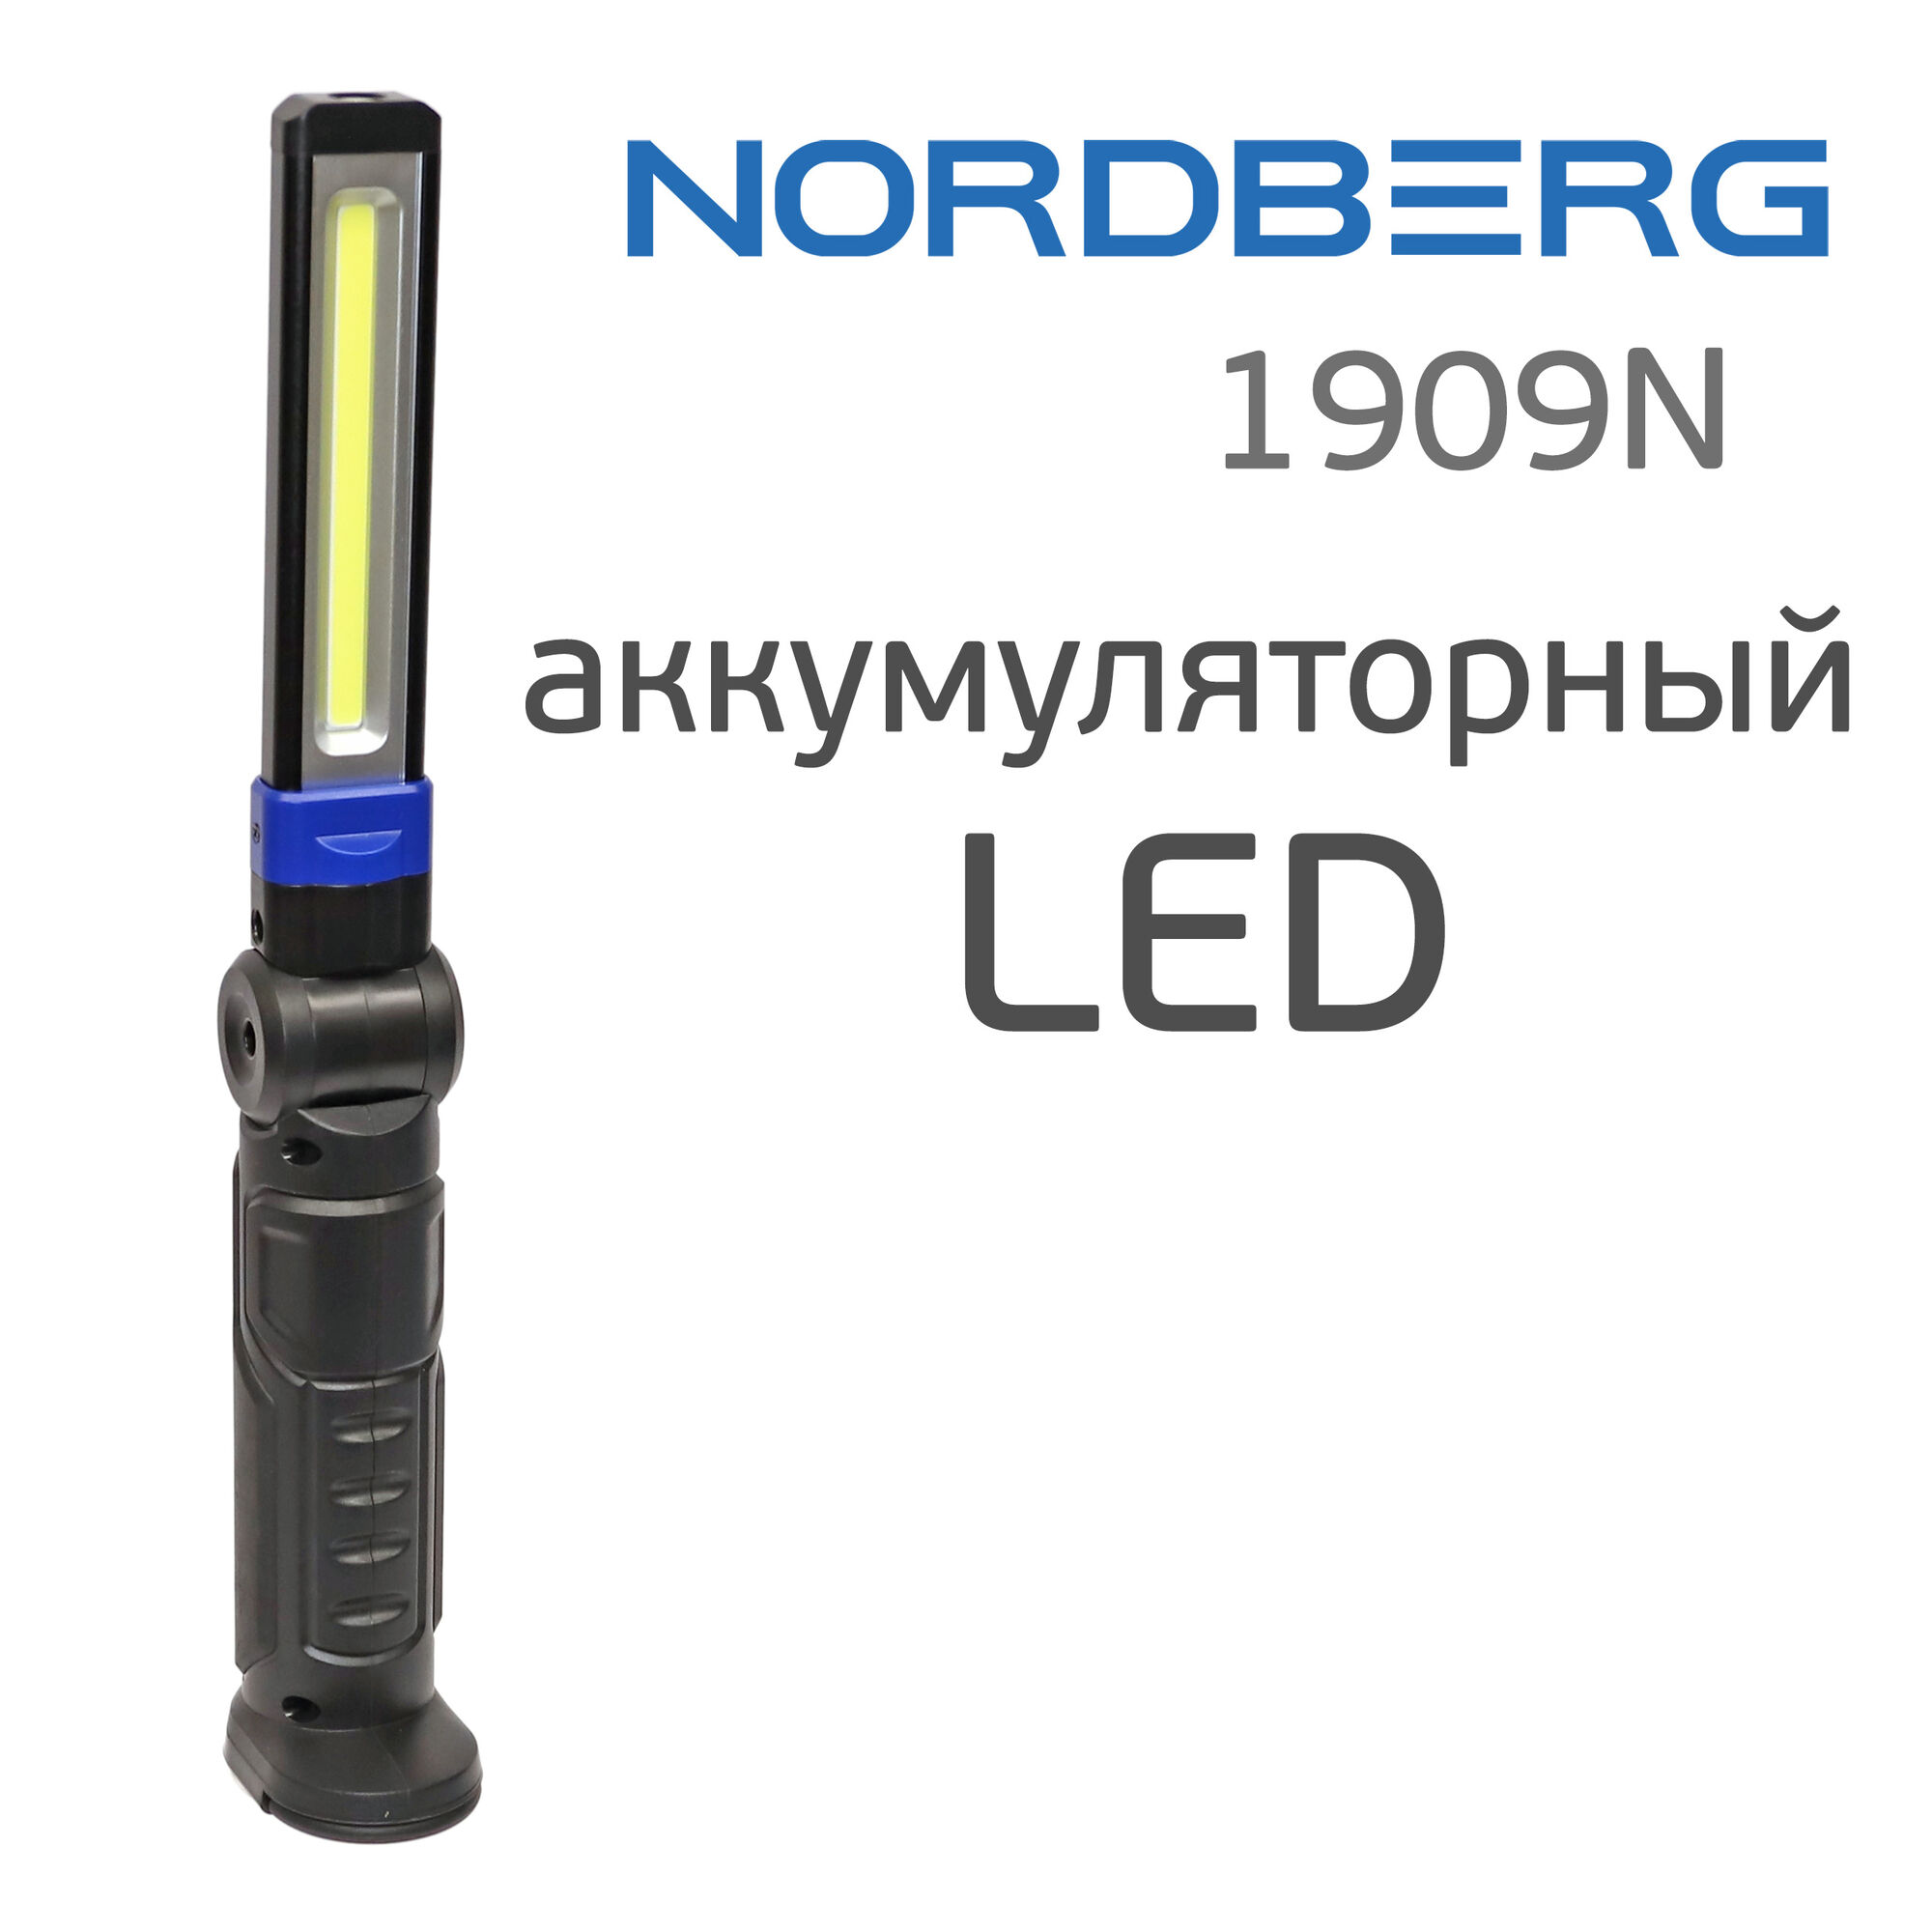 Фонарь светодиодный Nordberg 1909N (LED) аккумуляторный складной с магнитом и подвесом 1